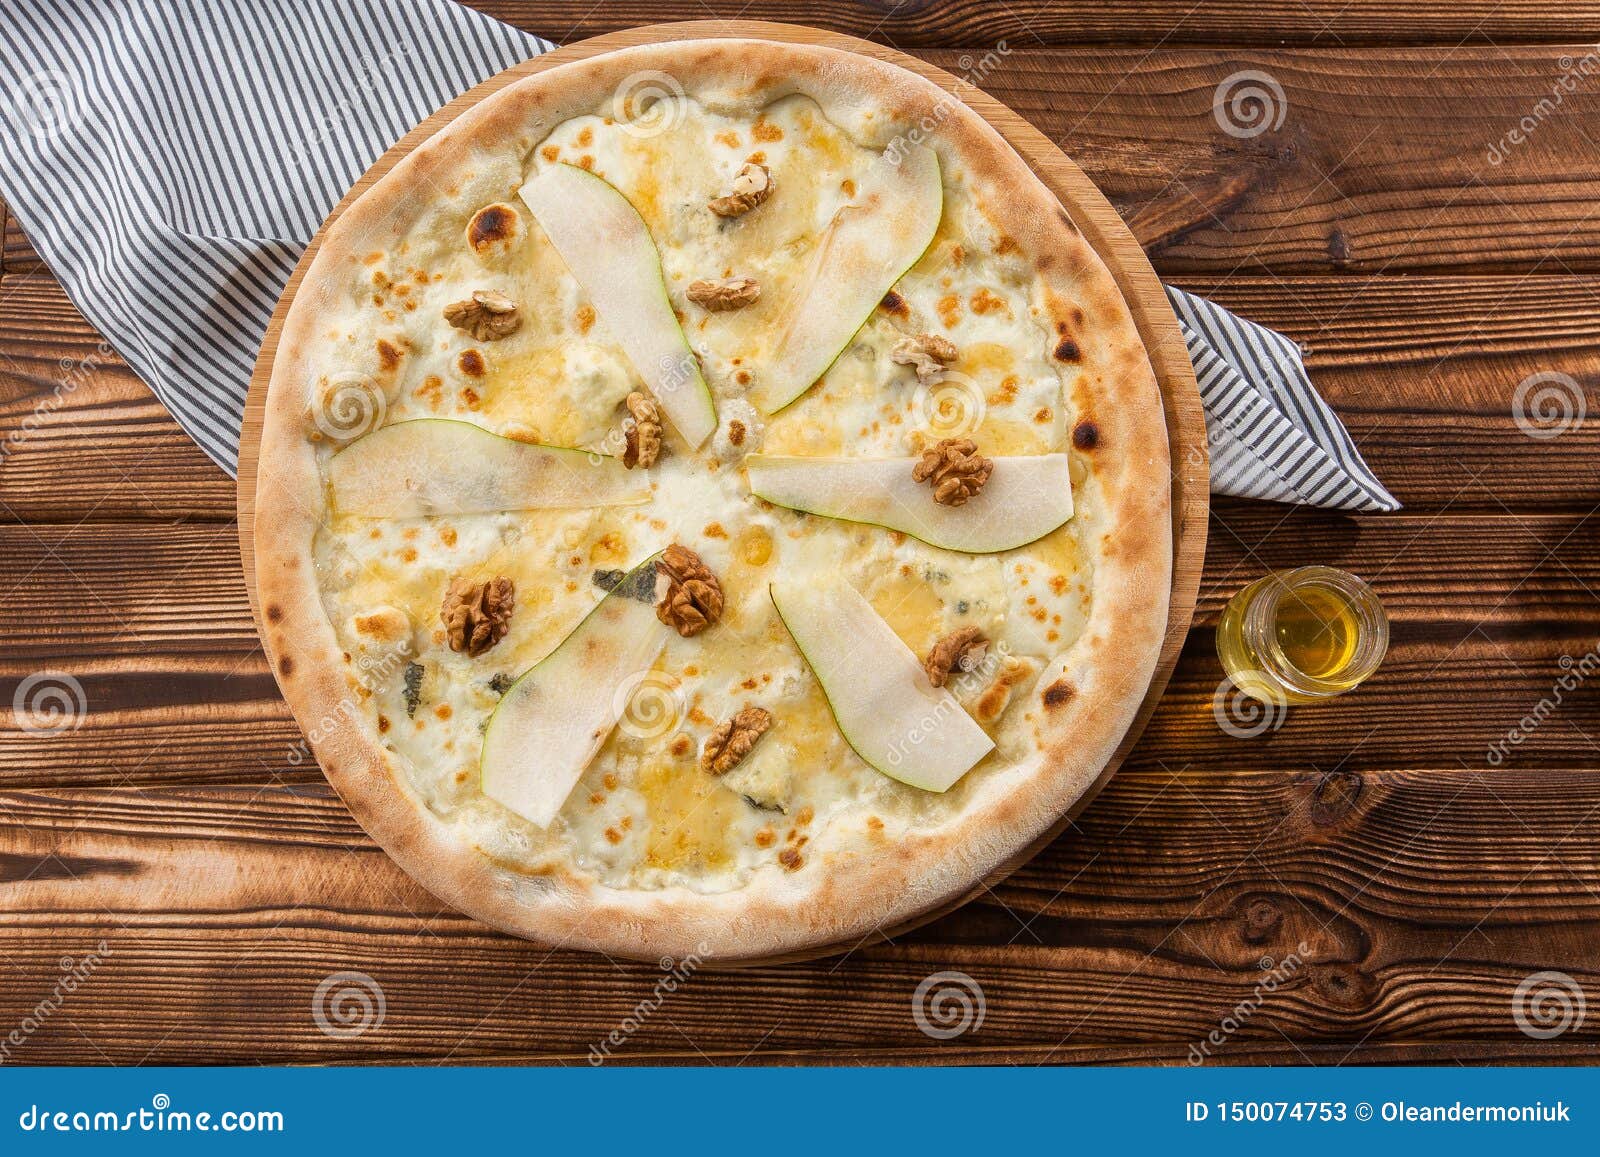 рецепт пиццы с грушей и горгонзолой от юлии высоцкой фото 118